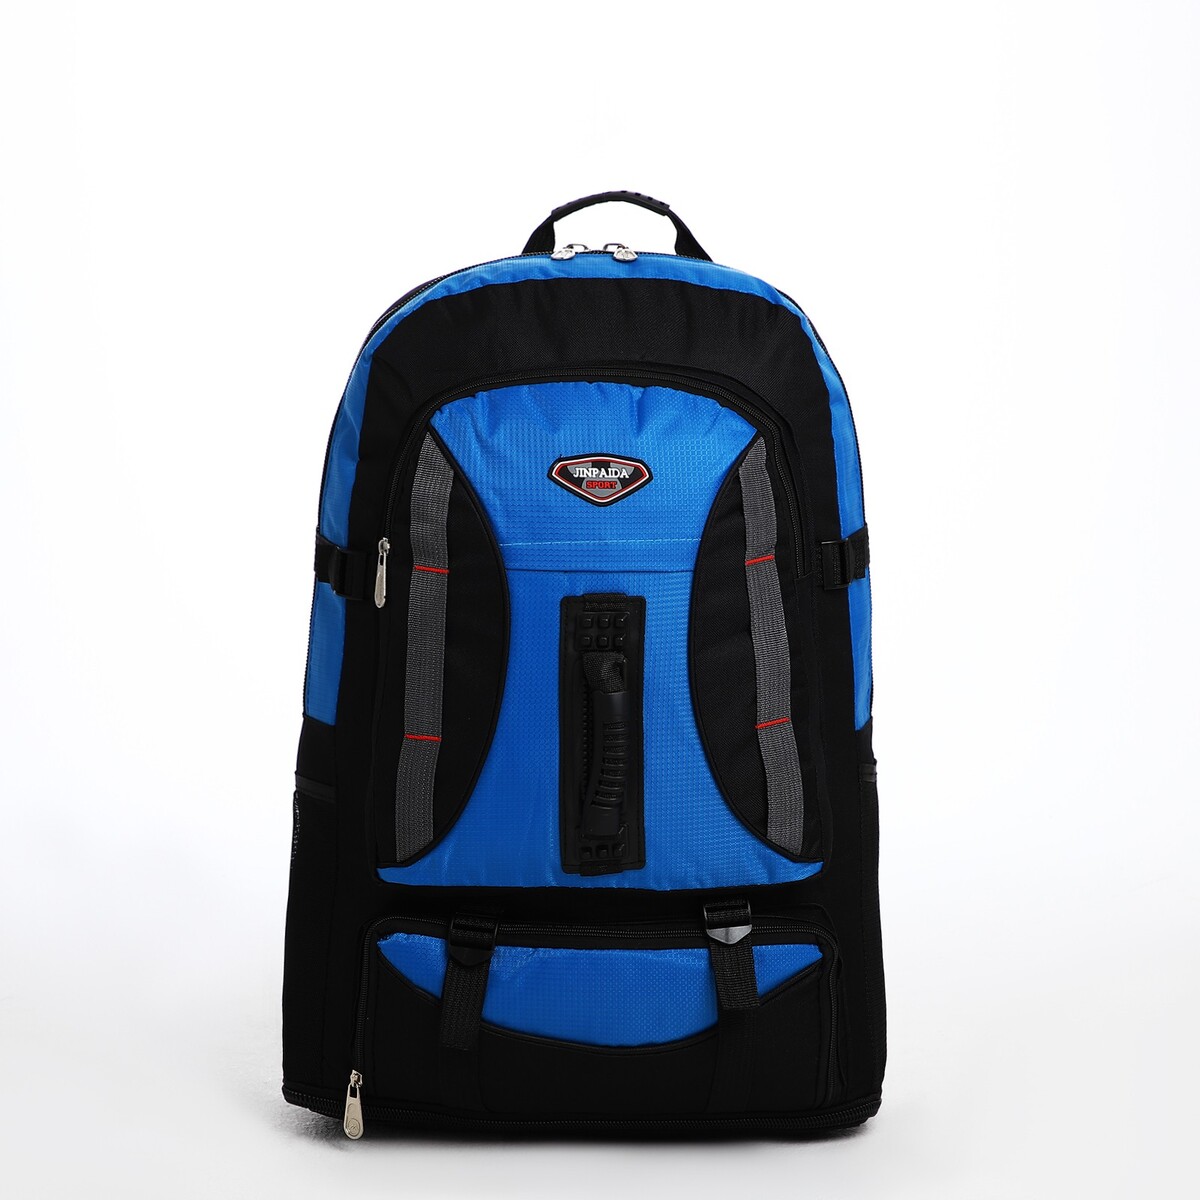 Рюкзак туристический на молнии, 4 наружных кармана, цвет синий/черный рюкзак на молнии с usb 4 наружных кармана сумка пенал синий